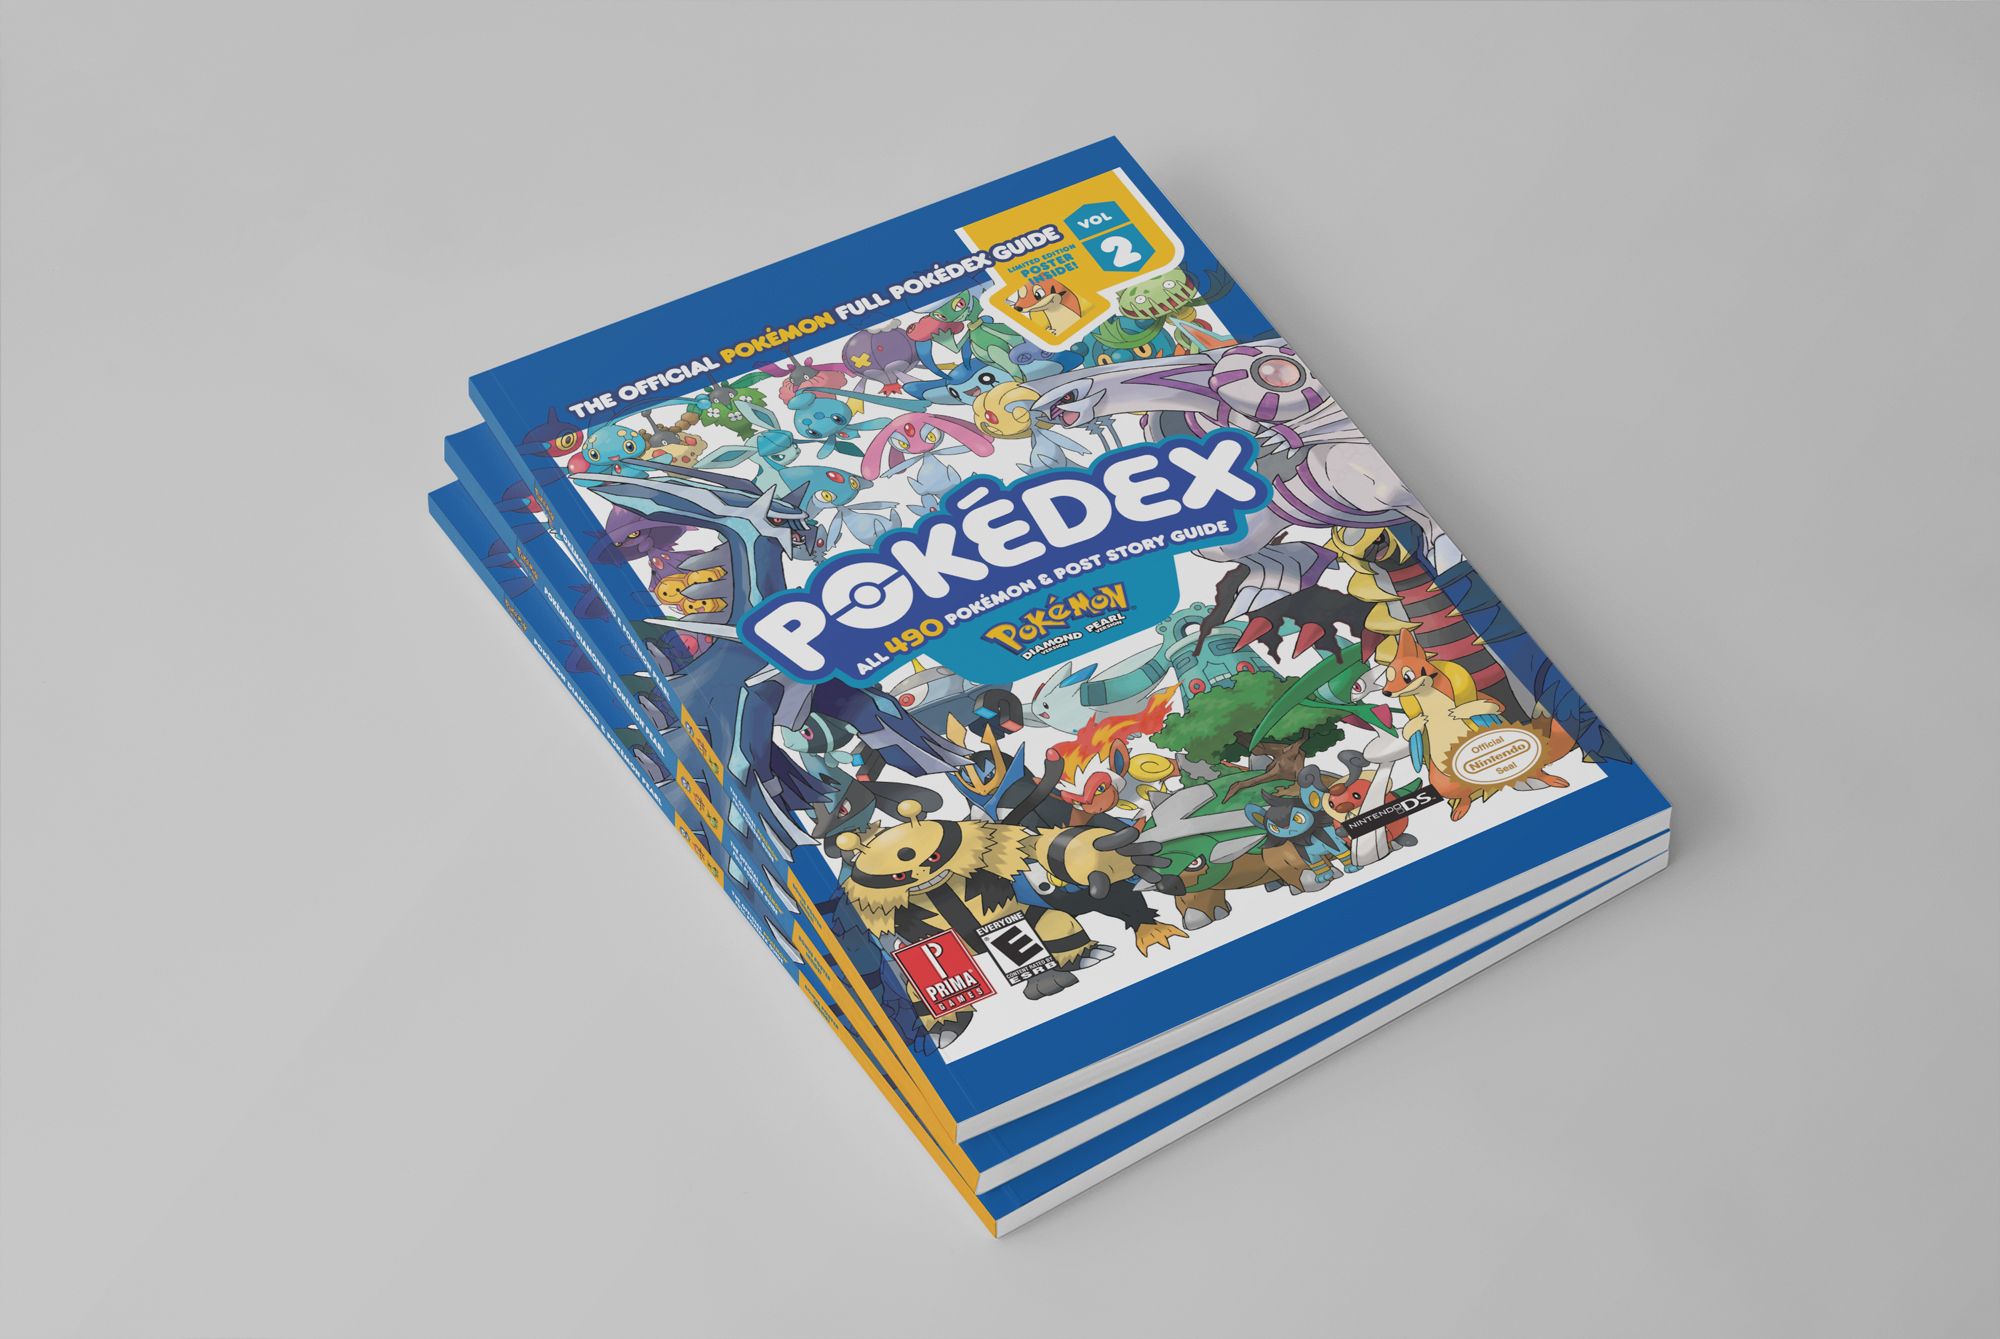 Pokemon Diamond & Pearl Pokedex: Prima Official Game Guide Vol. 2